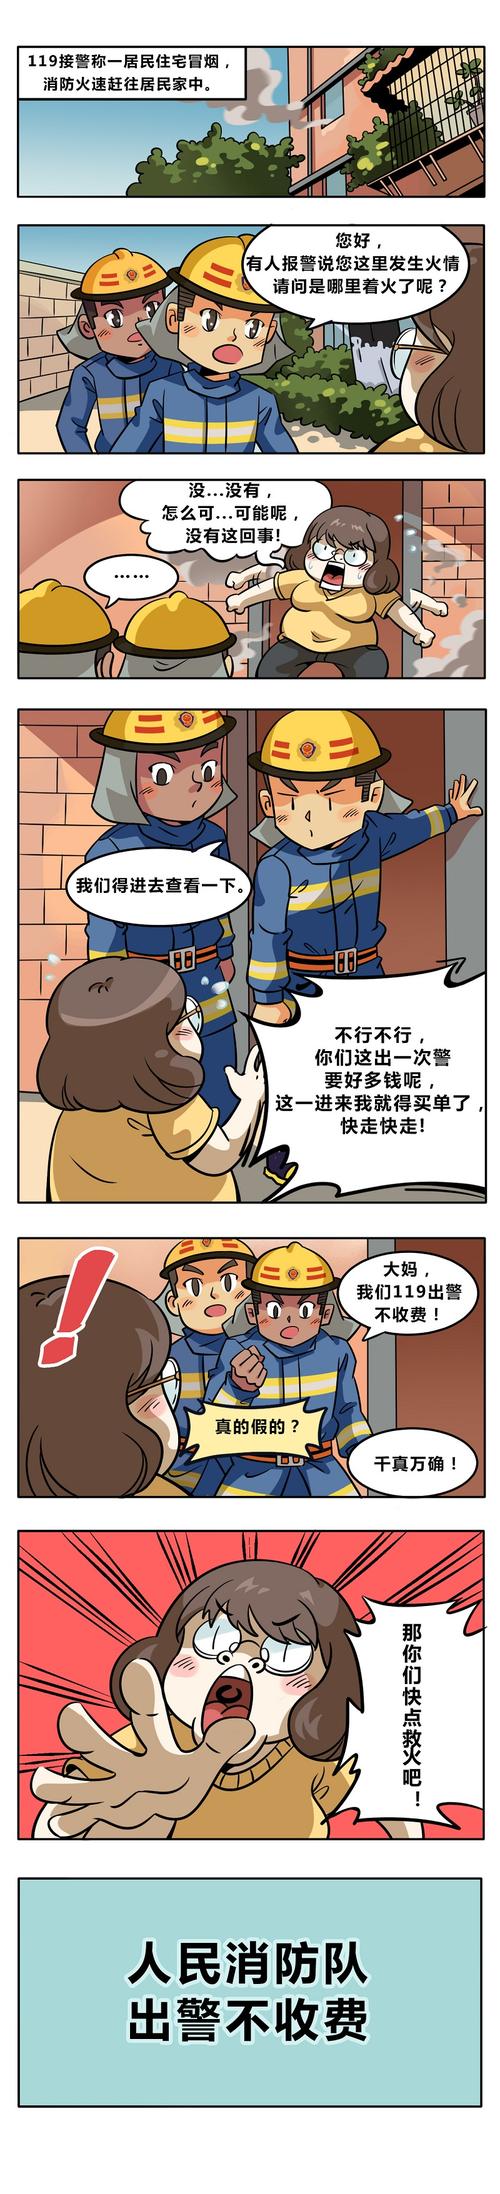 消防系列科普漫画